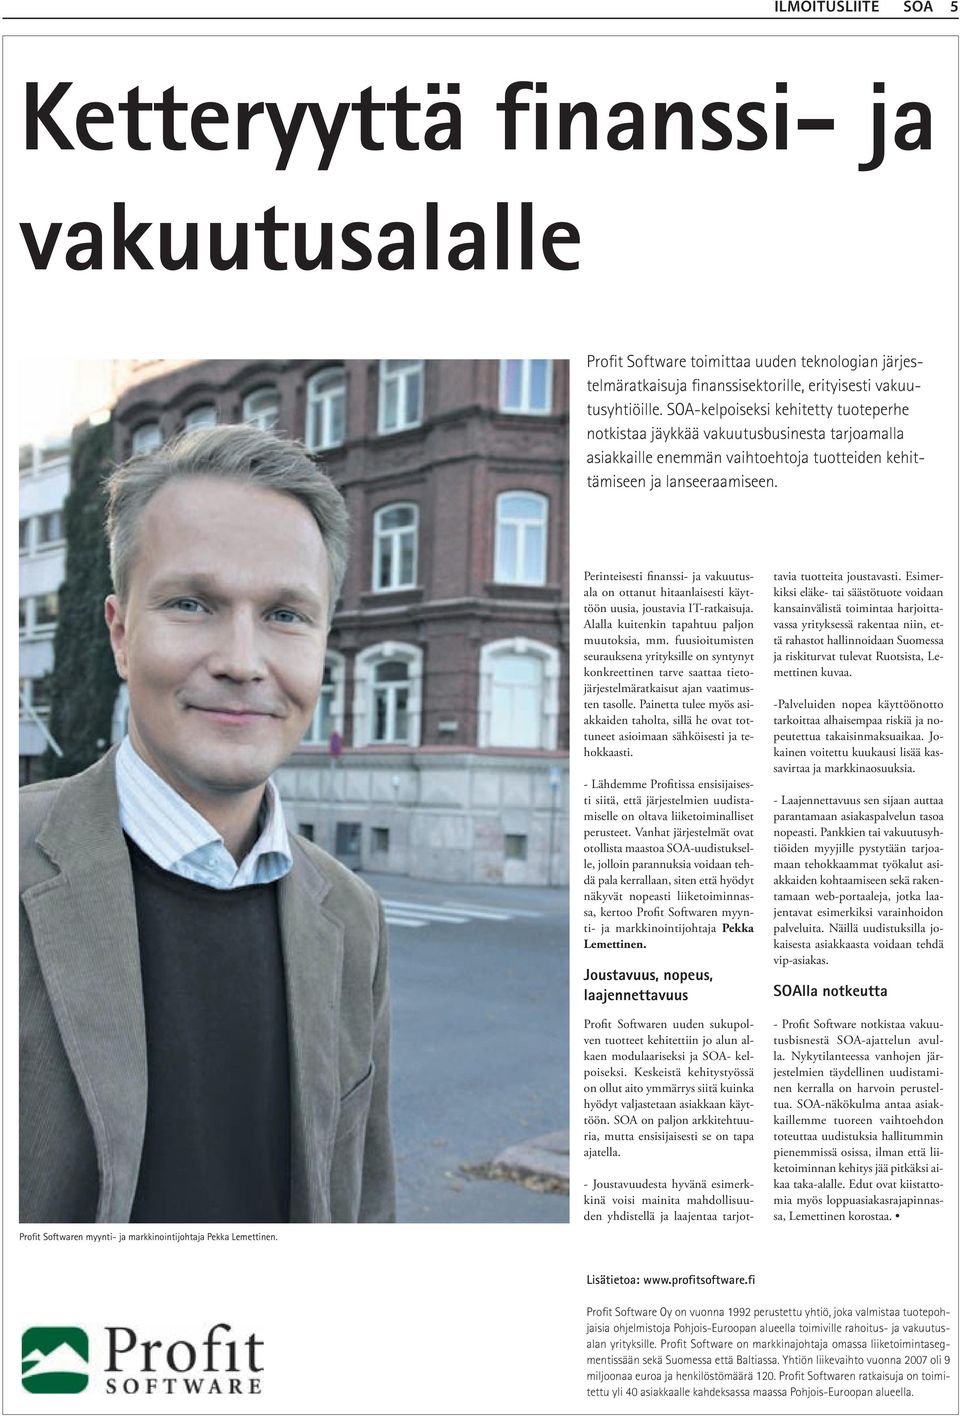 Profit Softwaren myynti- ja markkinointijohtaja Pekka Lemettinen. Perinteisesti finanssi- ja vakuutusala on ottanut hitaanlaisesti käyttöön uusia, joustavia IT-ratkaisuja.